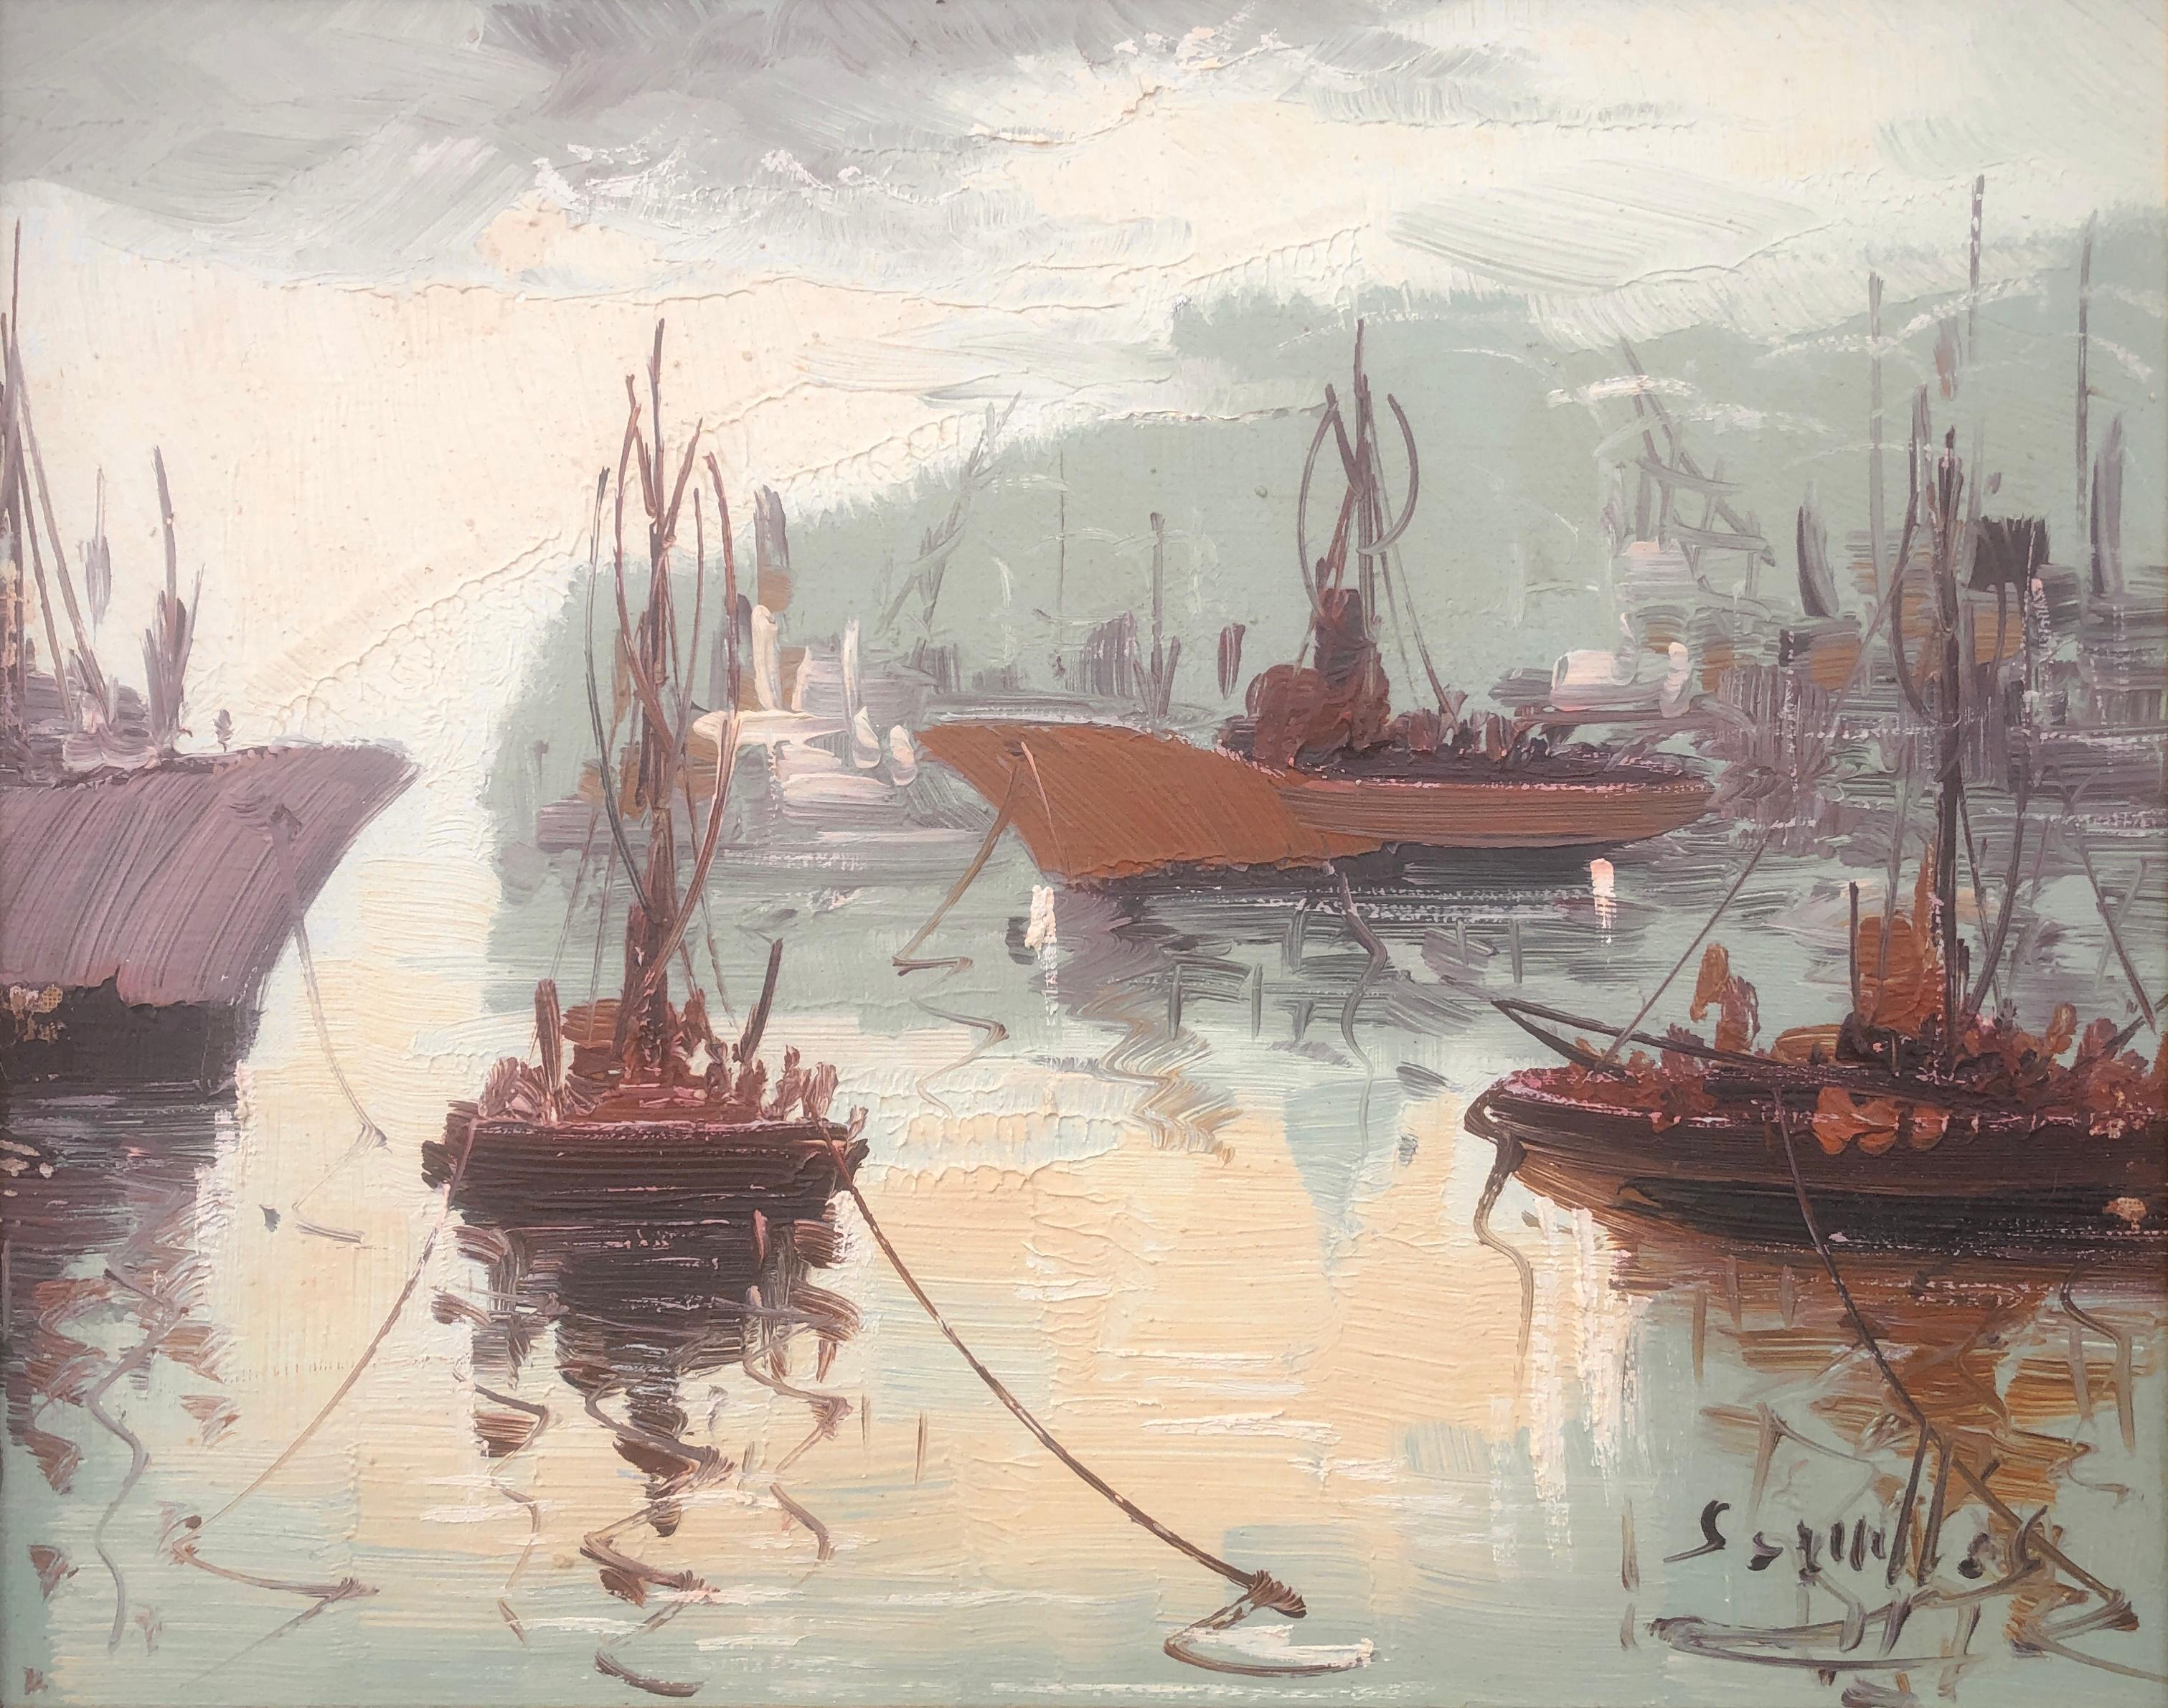 Antonio Segrelles Landscape Painting - Spanish pier oil on canvas painting Spain seascape